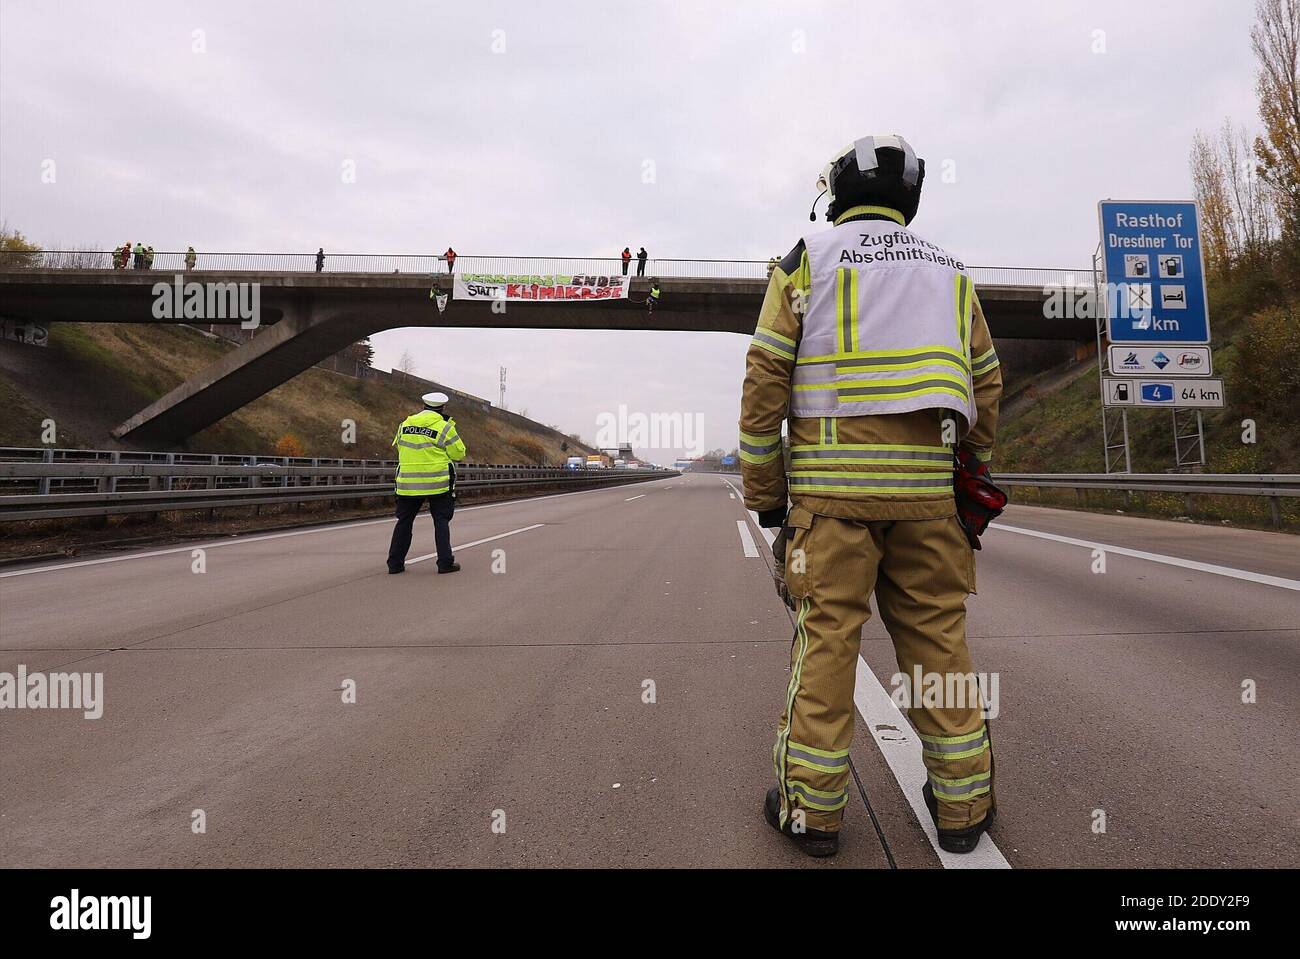 27. November 2020, Sachsen, Dresden: Polizisten halten die Verleht auf der Autobahn 14 bei Dresden während eines Protestes von Klimaaktivisten für die Verkehrskaround an. (To dpa 'AktivistInnen rappeln von der Brücke - Durig hat kein Verständnis') Foto: Tino Plunert/dpa-Zentralbild/dpa Stockfoto